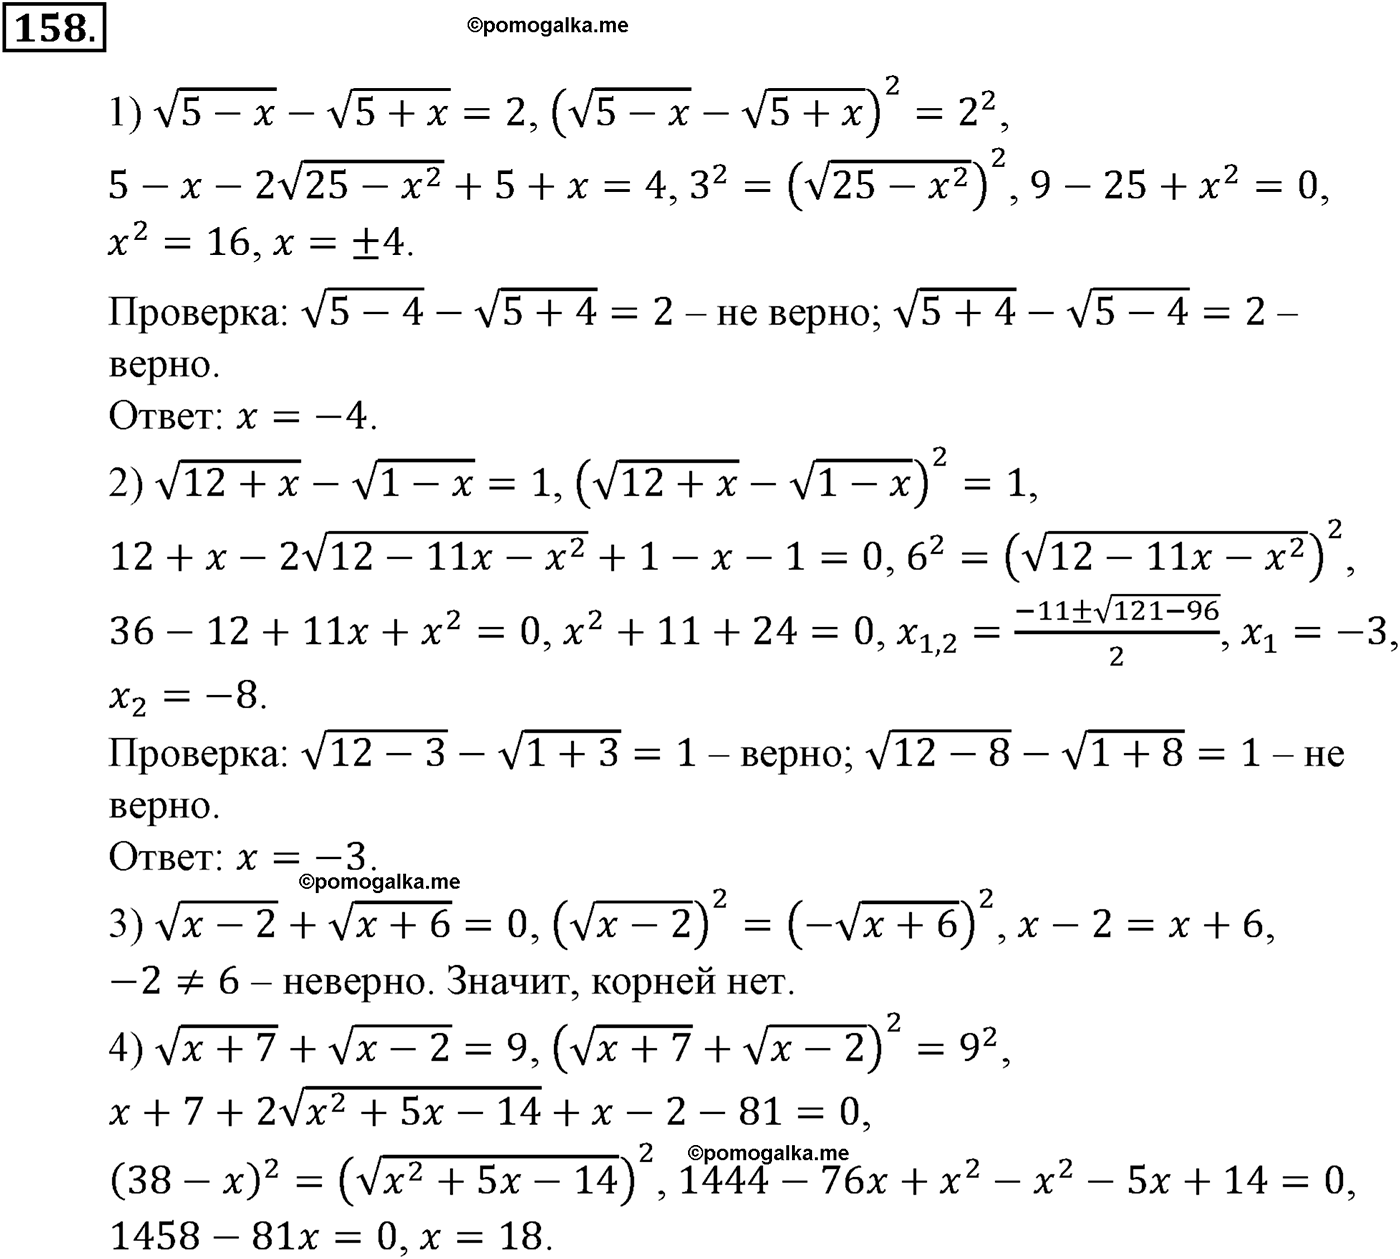 разбор задачи №158 по алгебре за 10-11 класс из учебника Алимова, Колягина